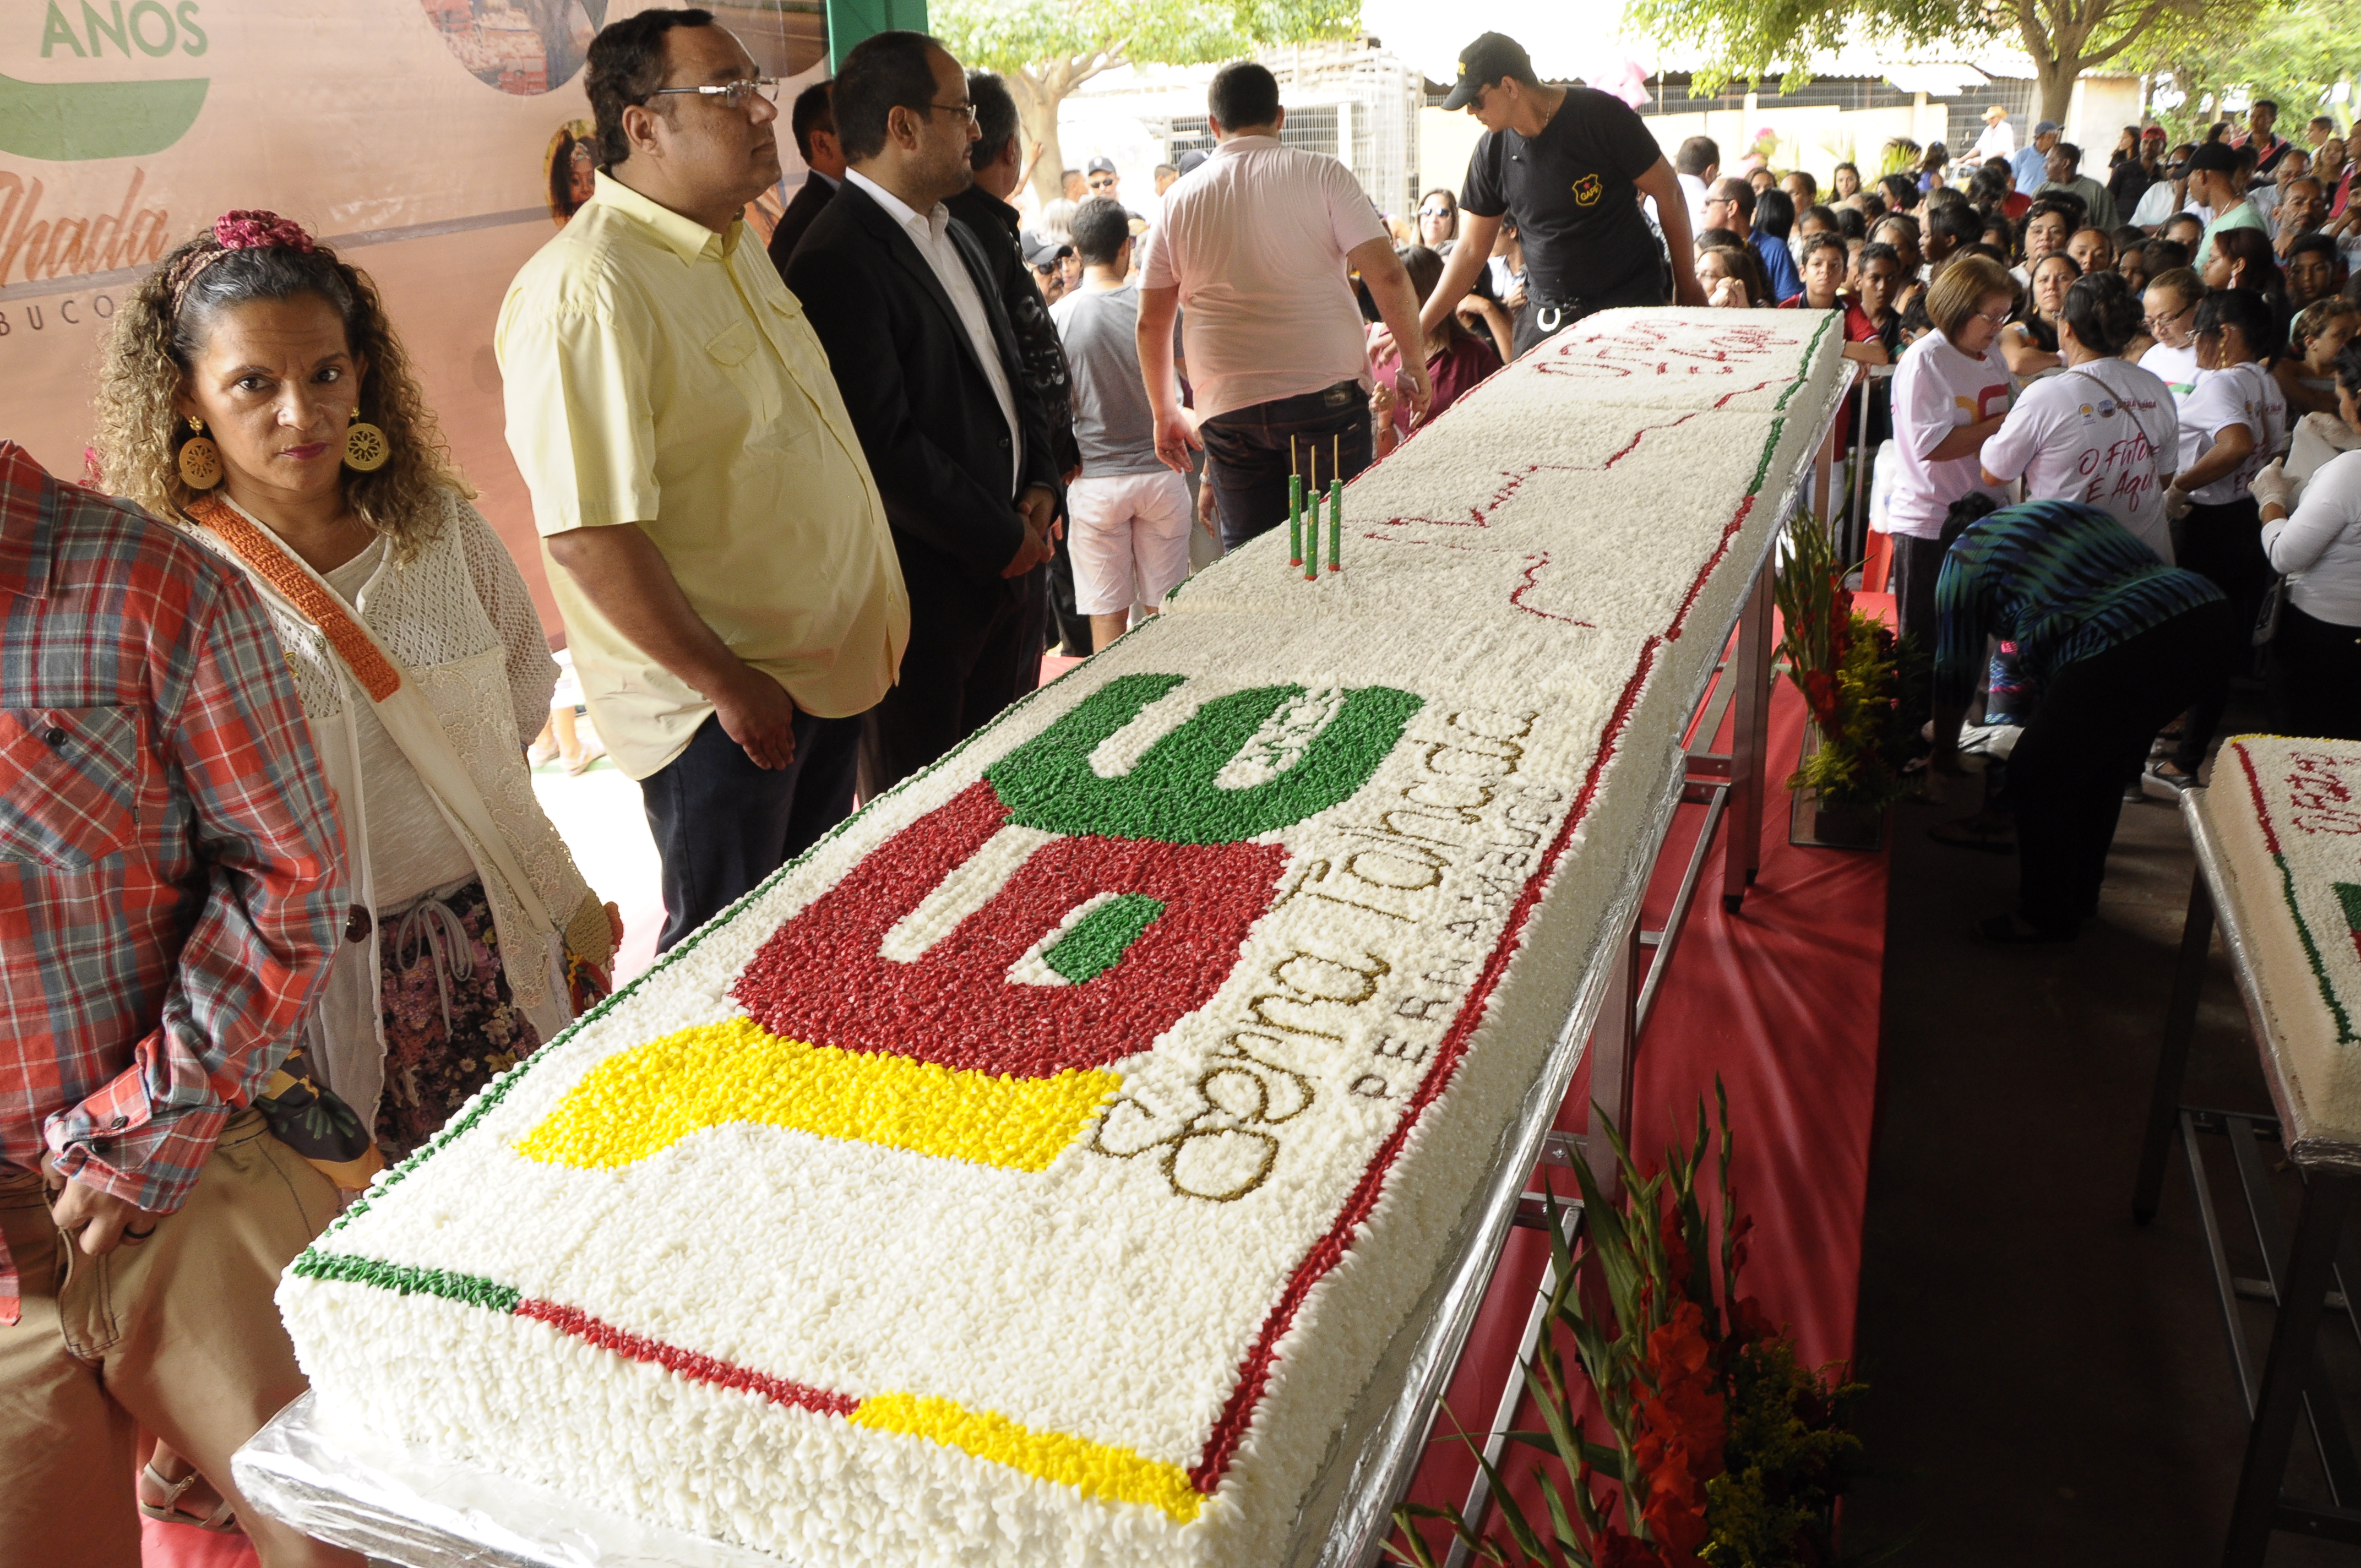 Serra Talhada em festa! Corte de bolo gigante atrai multidão